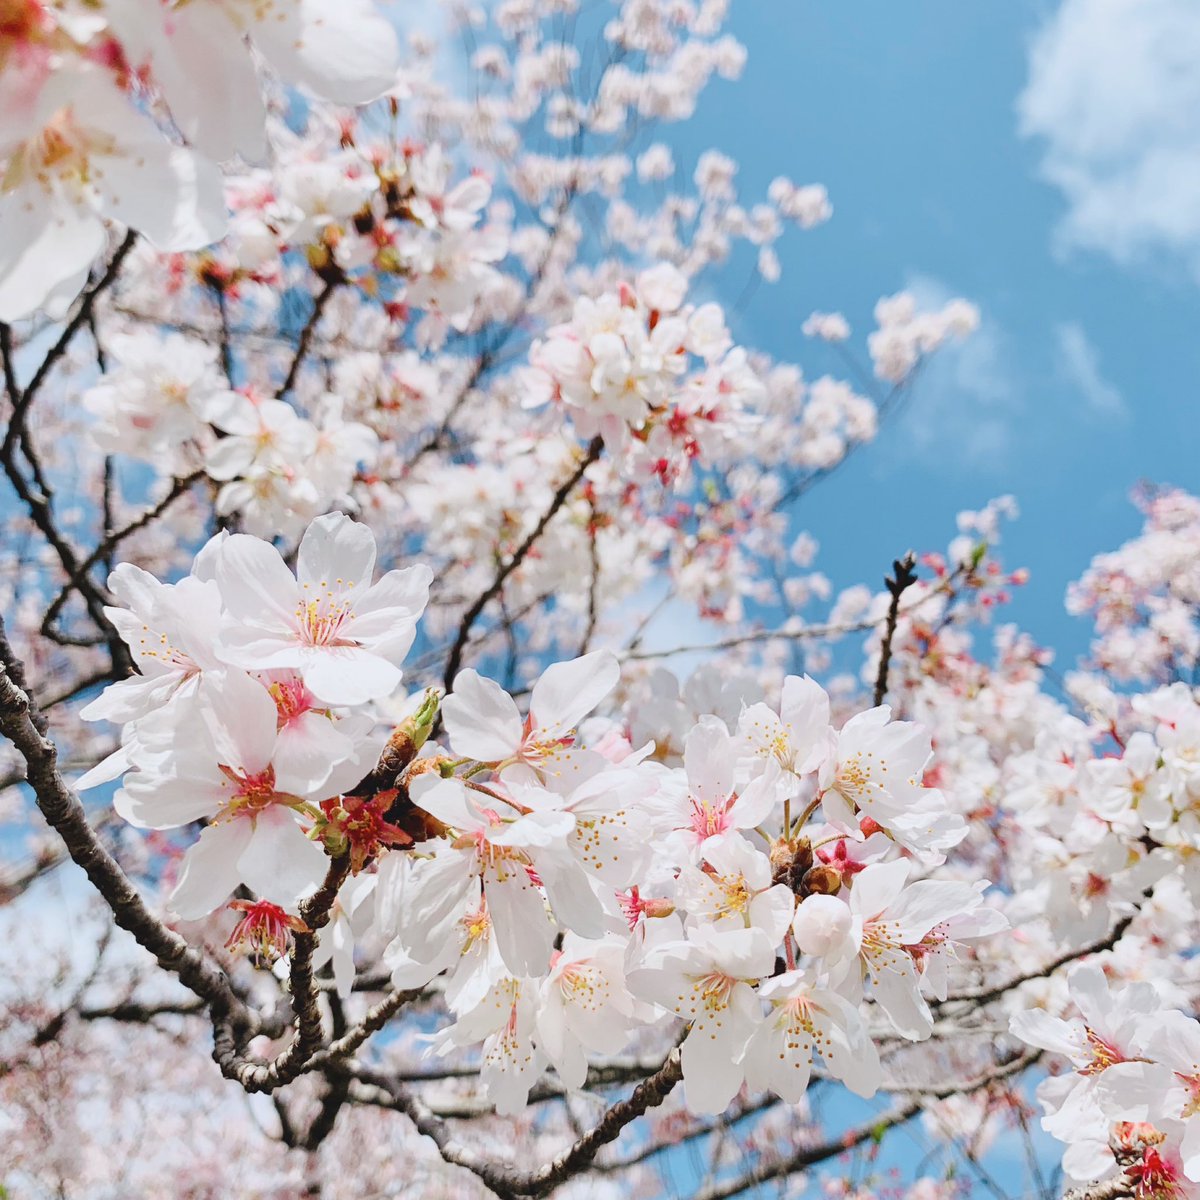 「桜の花びら散る頃が一番すき◎身体を清められる気がする* 」|Halのイラスト